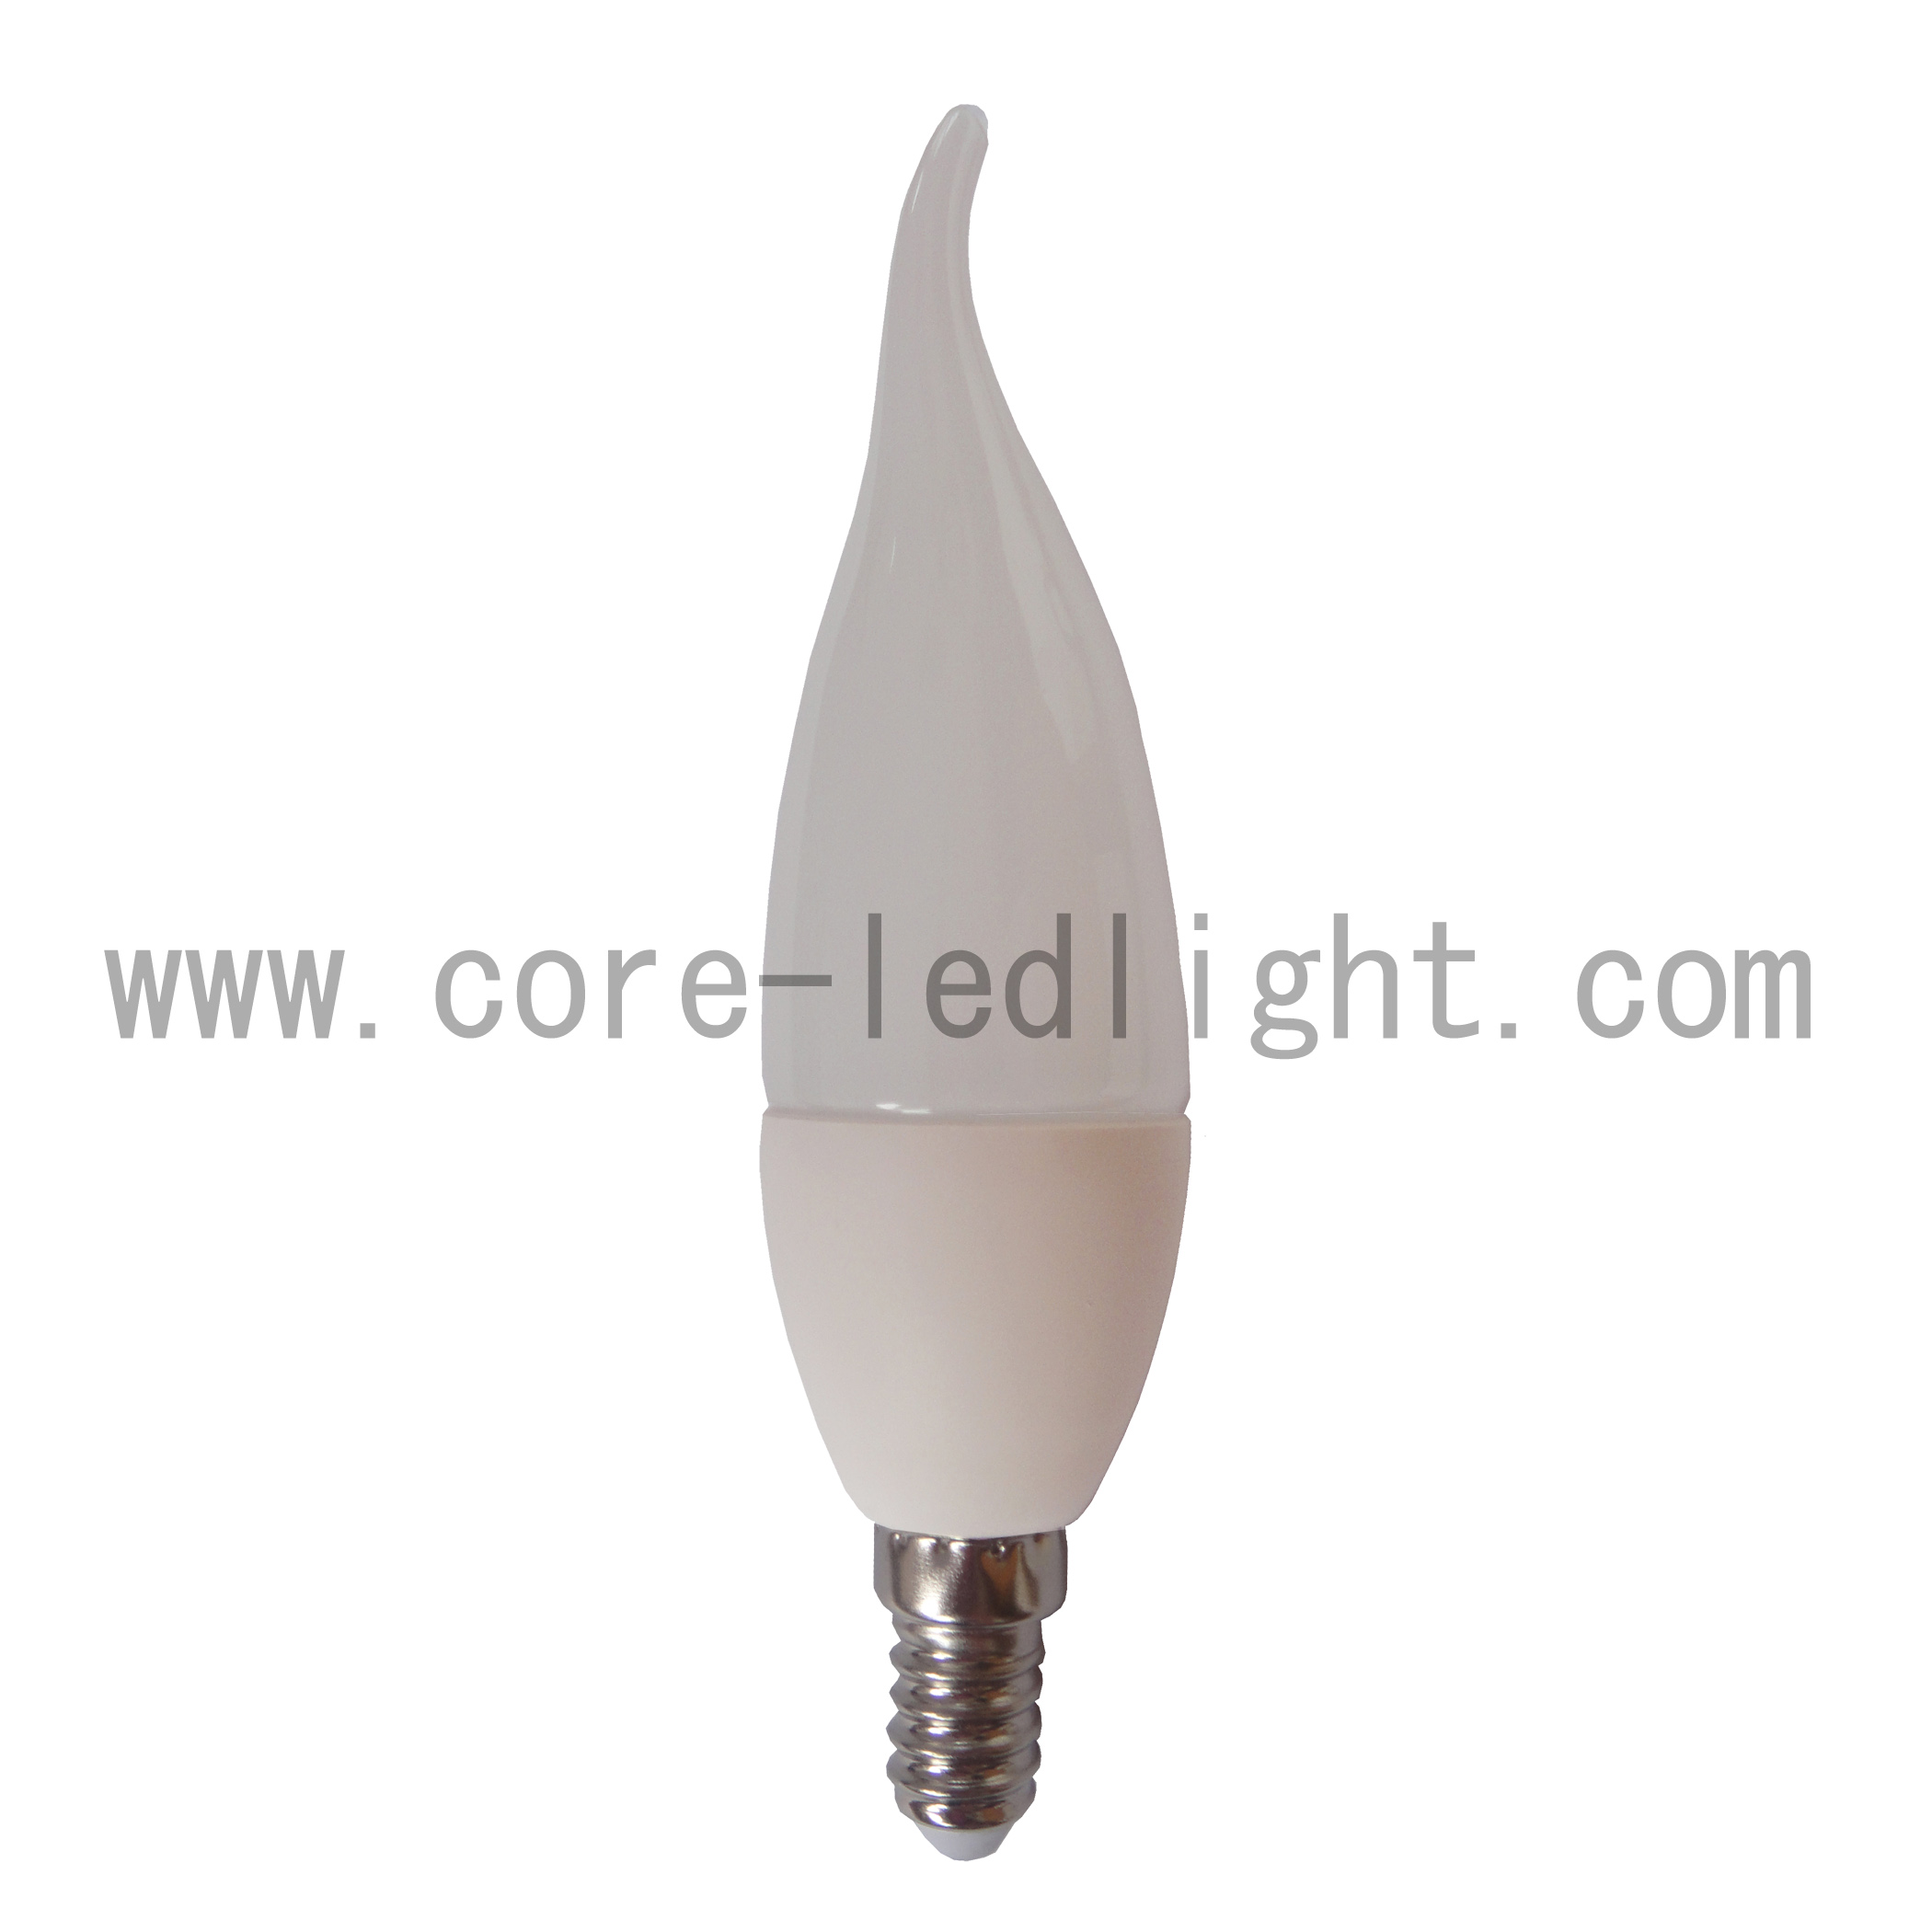 CL F37 LED Bulb Lamp